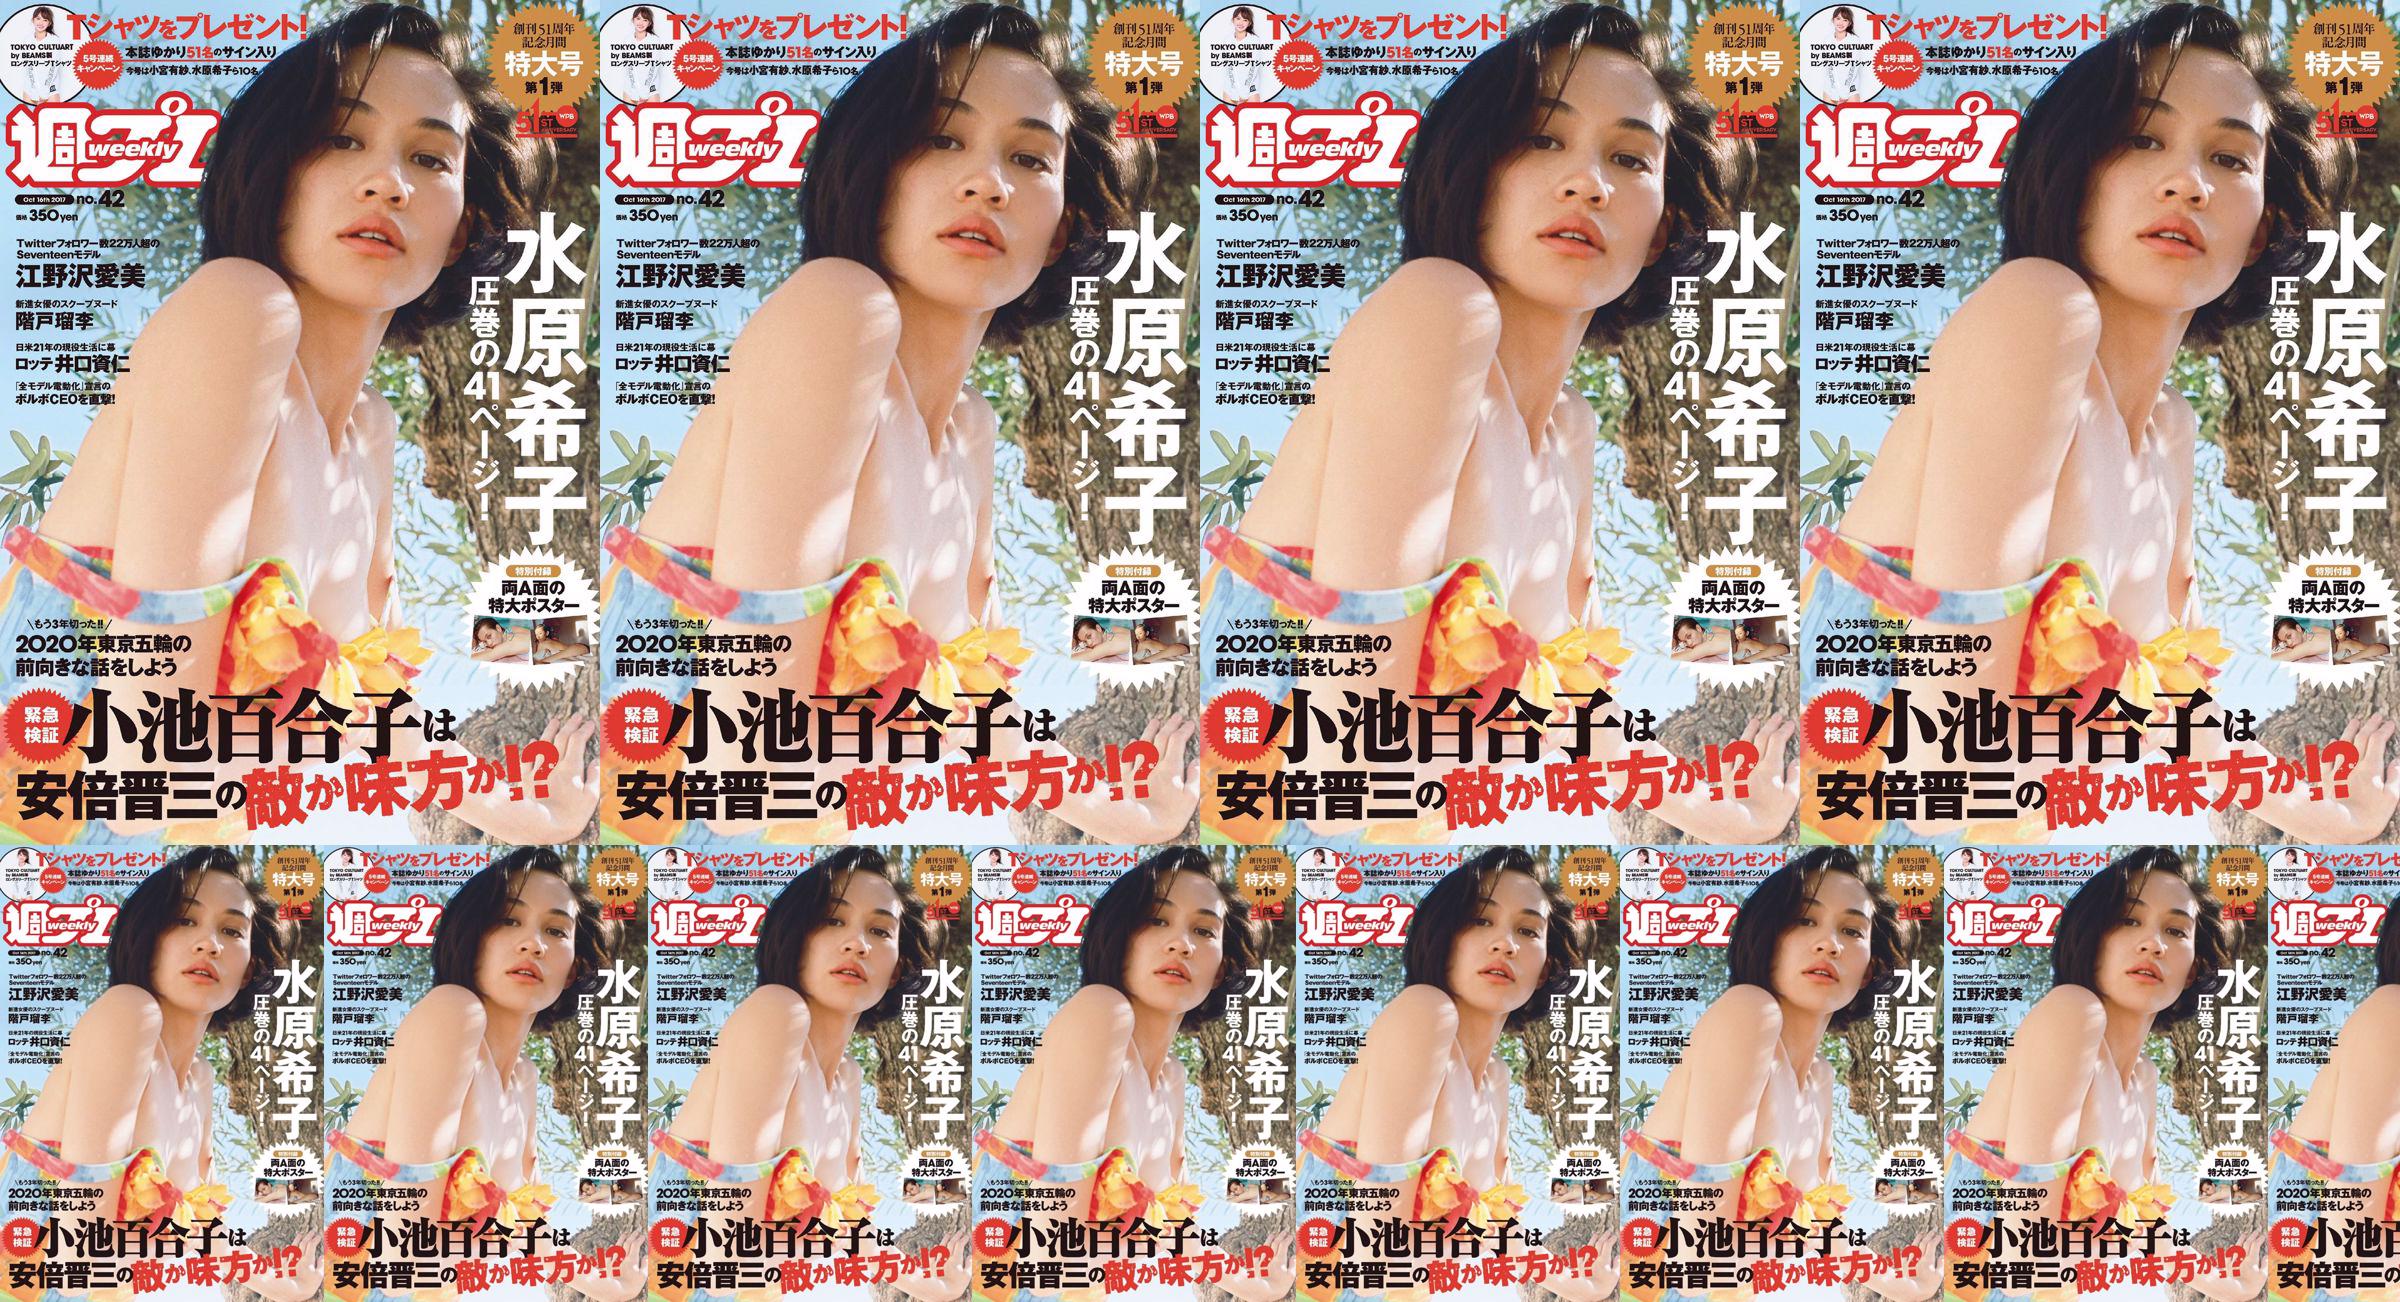 Kiko Mizuhara Manami Enosawa Serina Fukui Miu Nakamura Ruri Shinato [Weekly Playboy] 2017 No.42 Photo Magazine No.d0931f Pagina 4